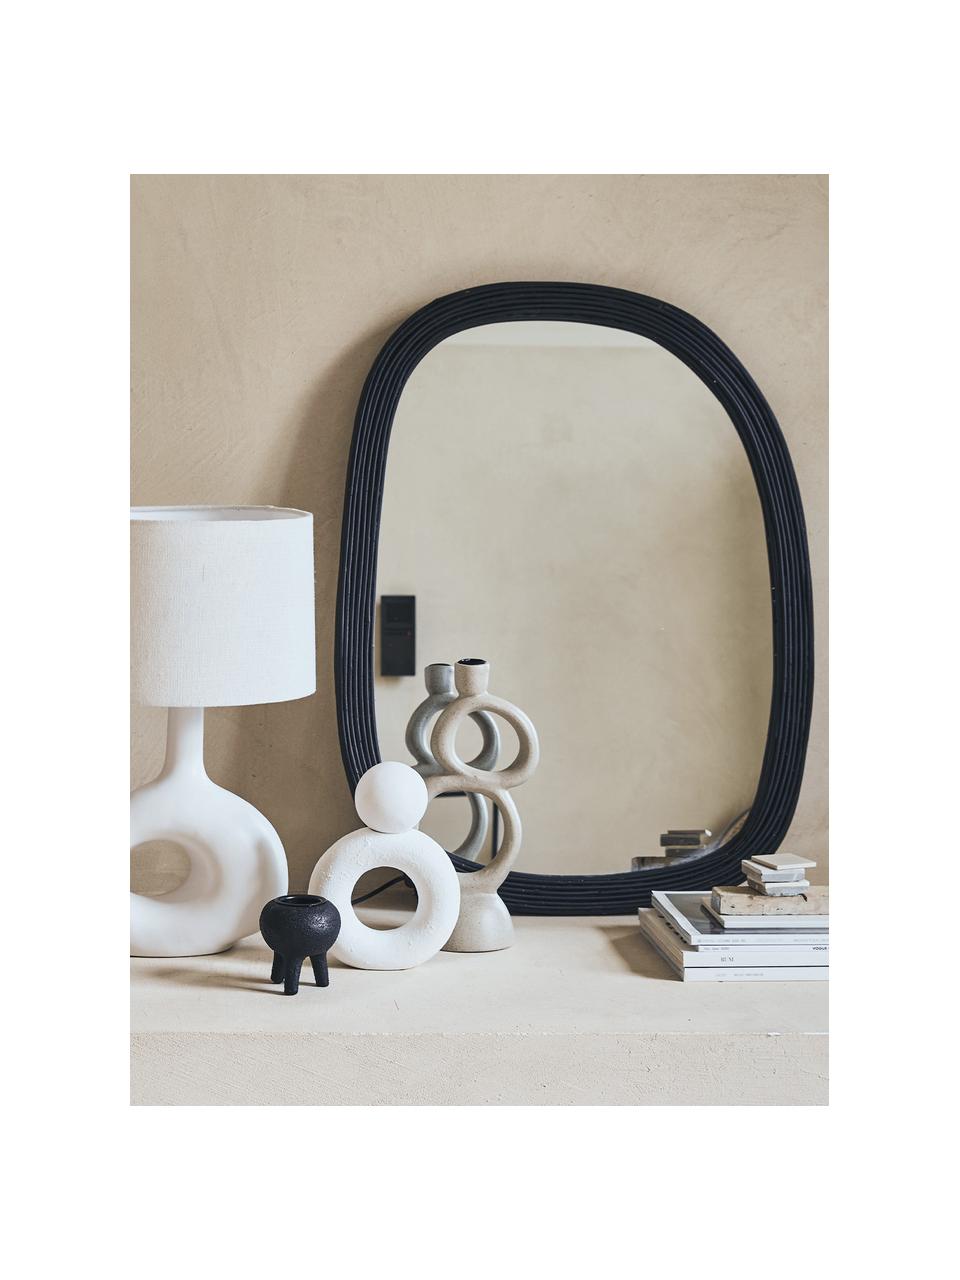 Handgemachter Wandspiegel Organic mit schwarzem Rattanrahmen, Rahmen: Rattan, Spiegelfläche: Spiegelglas, Schwarz, B 55 x H 75 cm